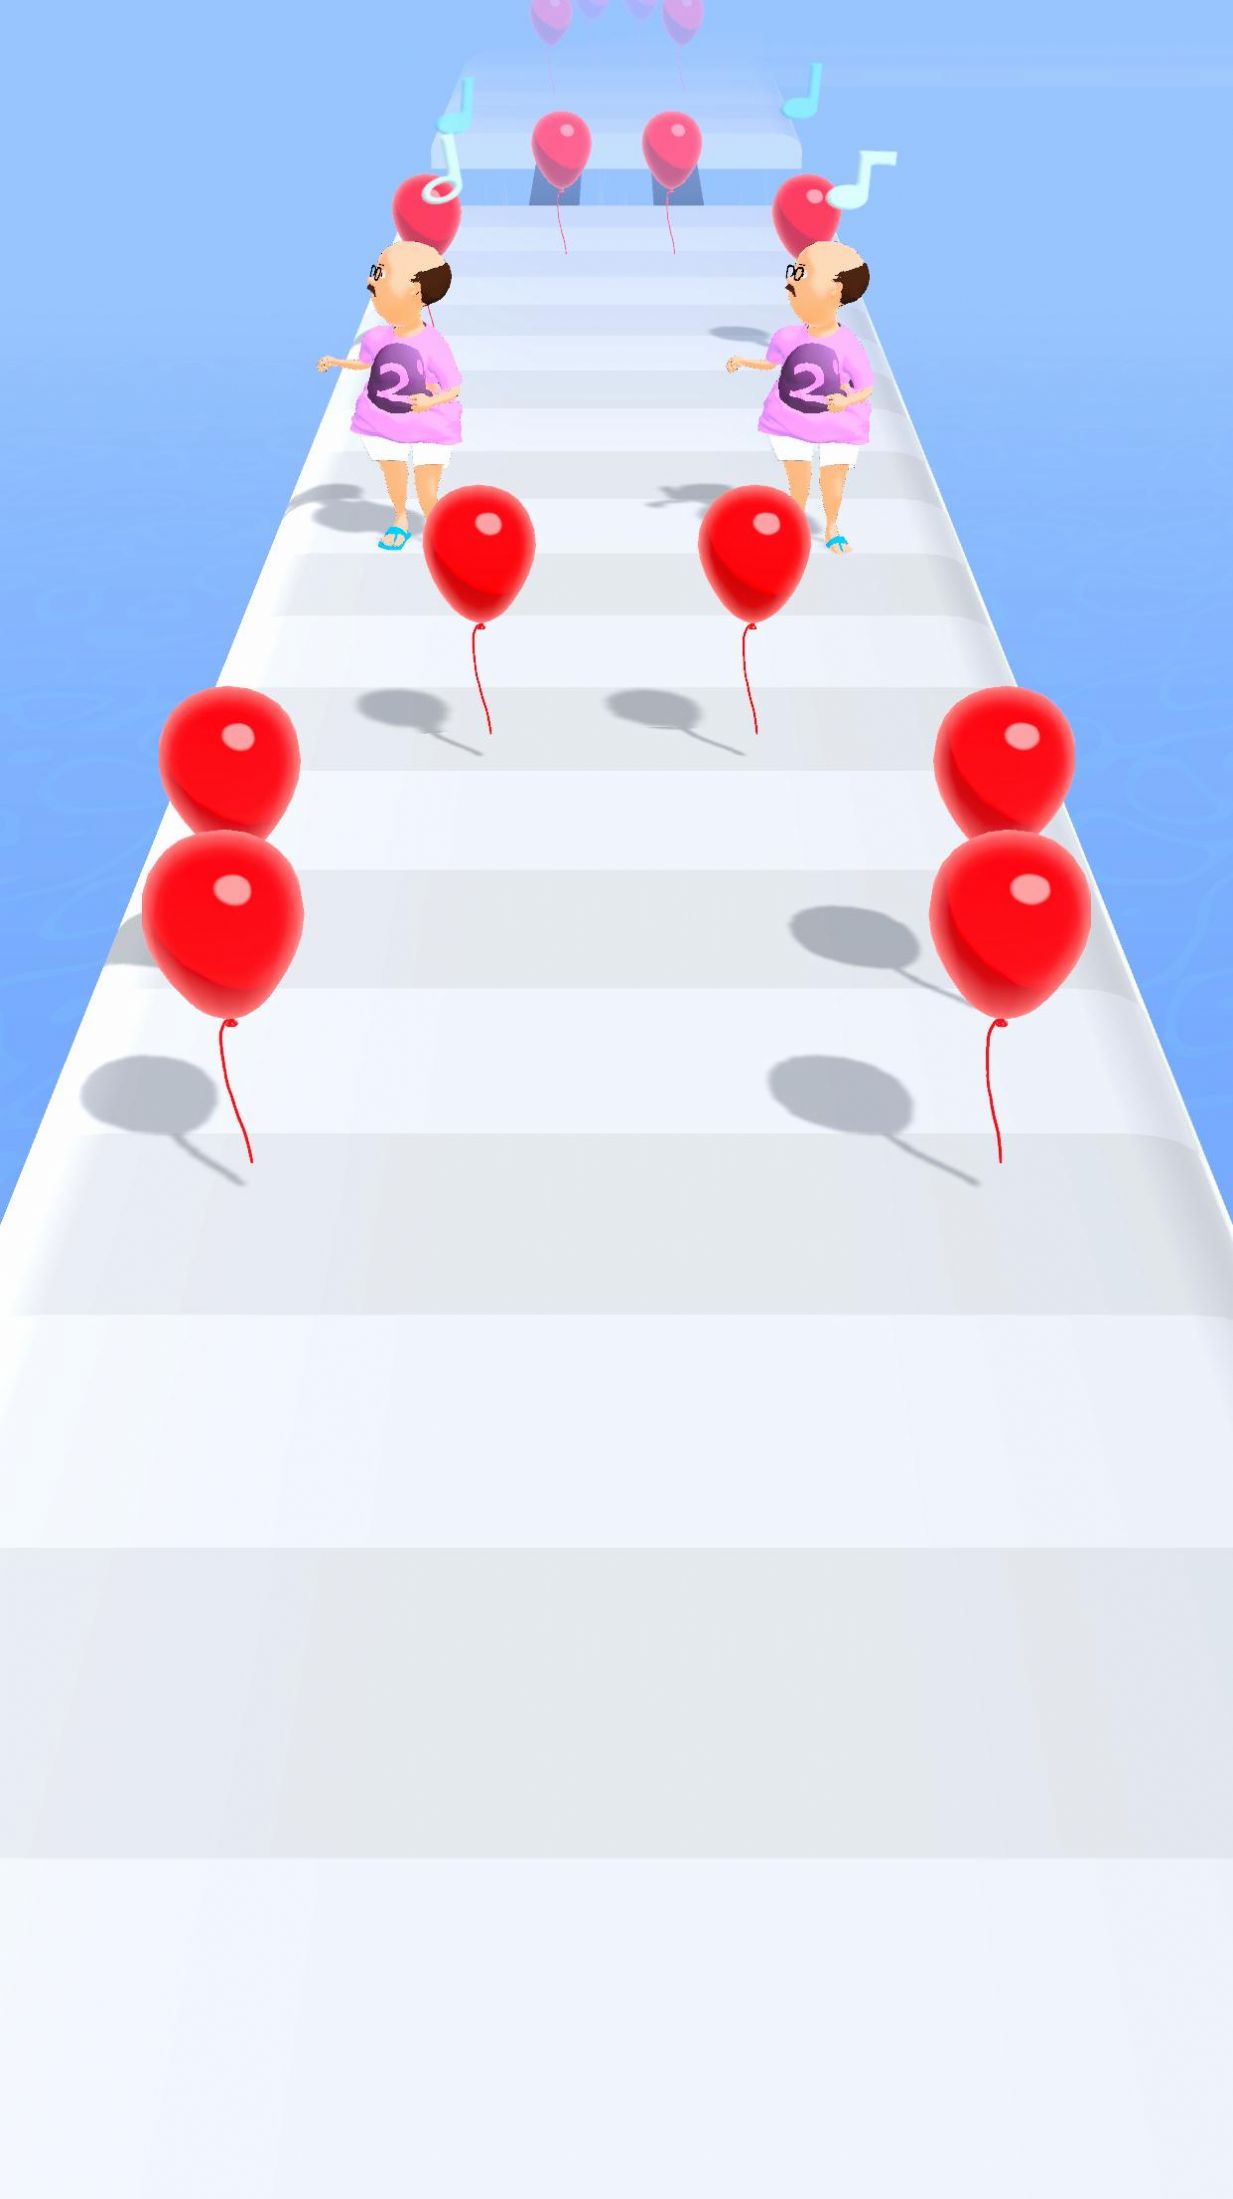 阴险的气球手游游戏下载-阴险的气球手游游戏手机版 V1.0